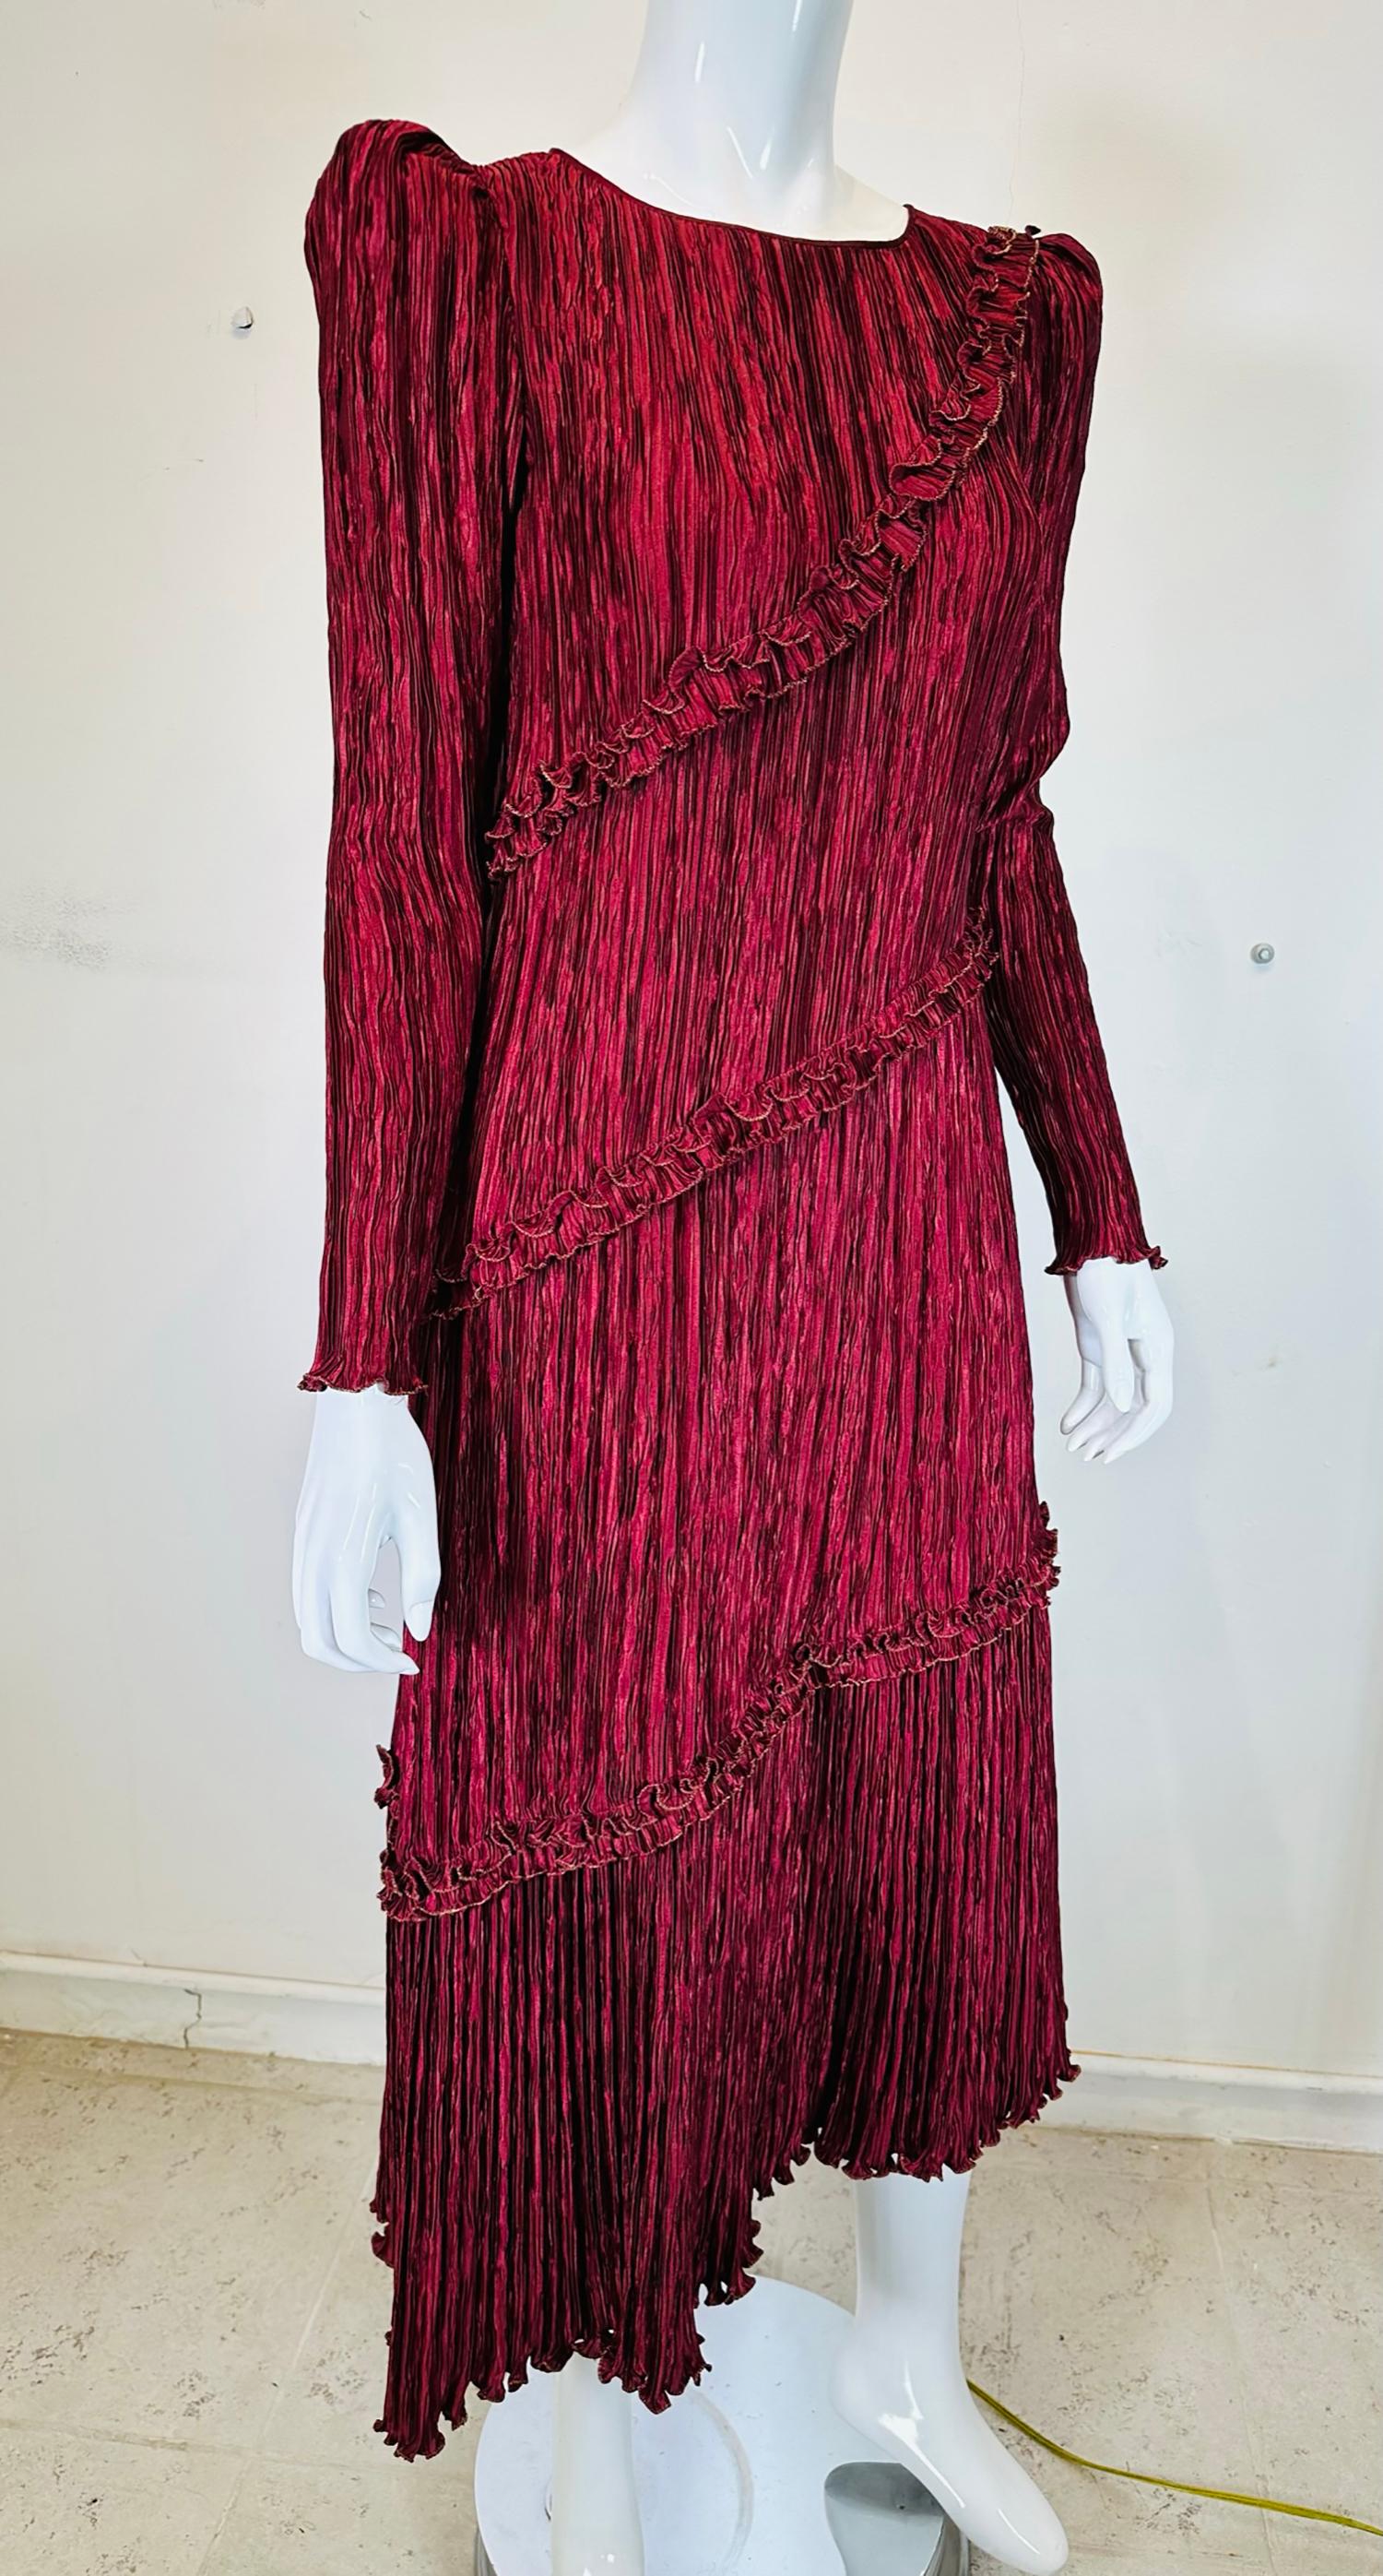 Mary McFadden granat- und goldfarbenes plissiertes Kleid mit asymmetrischem Saum und spitzer Schulter aus den 1970er Jahren. Berühmt für ihre Interpretation der magisch gefalteten Seidenkleider von Mario Fortuny aus den frühen 1900er Jahren, hat